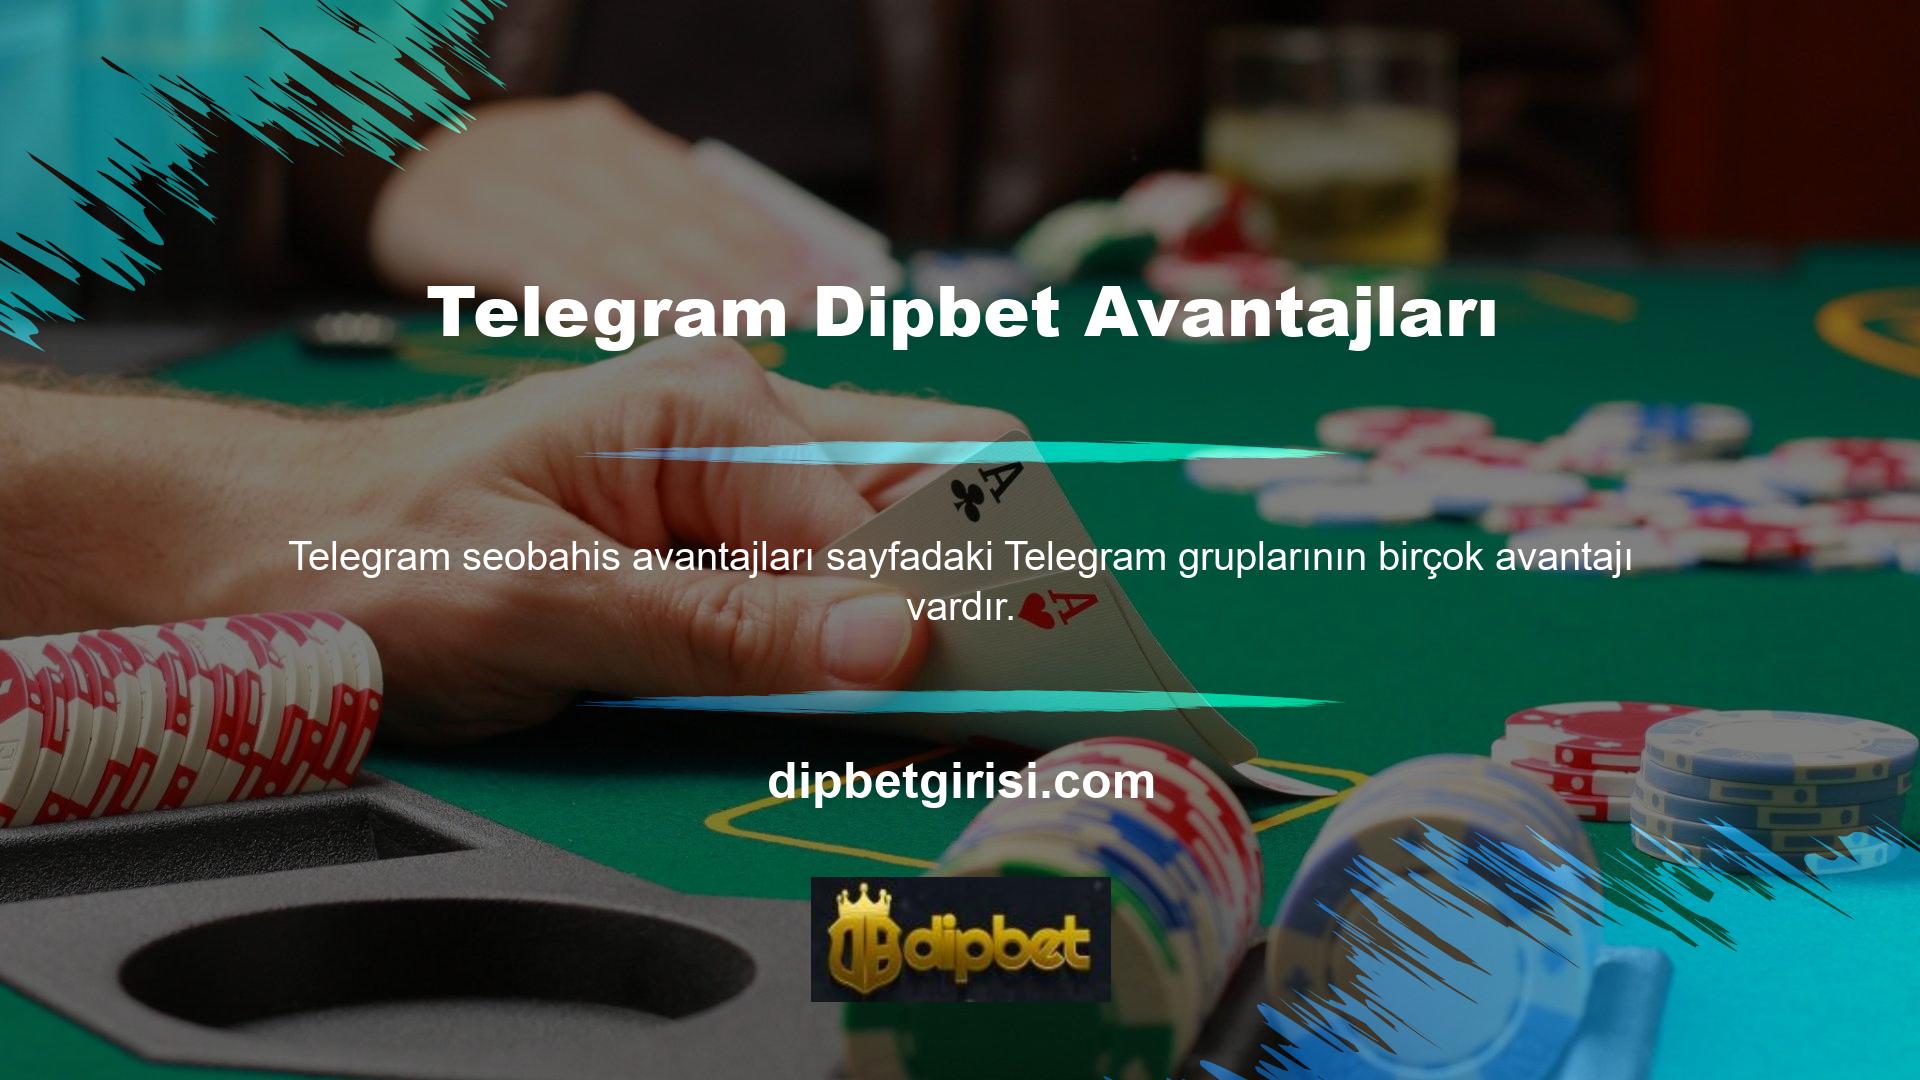 Dipbet Telegram'ın en büyük avantajı tamamen ücretsiz olması ve tüm oyuncuların bu hizmetten faydalanmasıdır